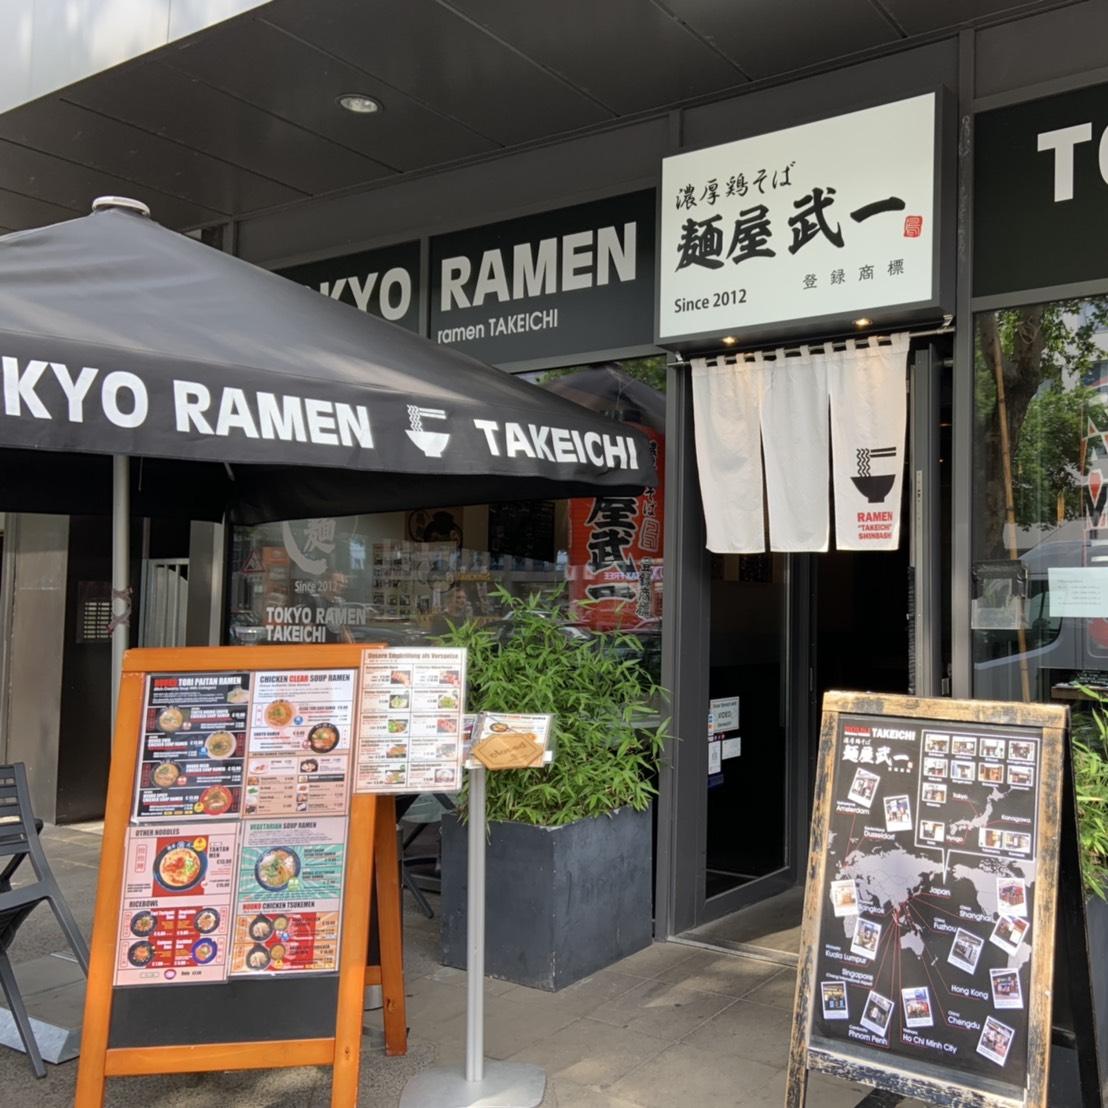 Restaurant "Tokyo Ramen Takeichi" in Düsseldorf